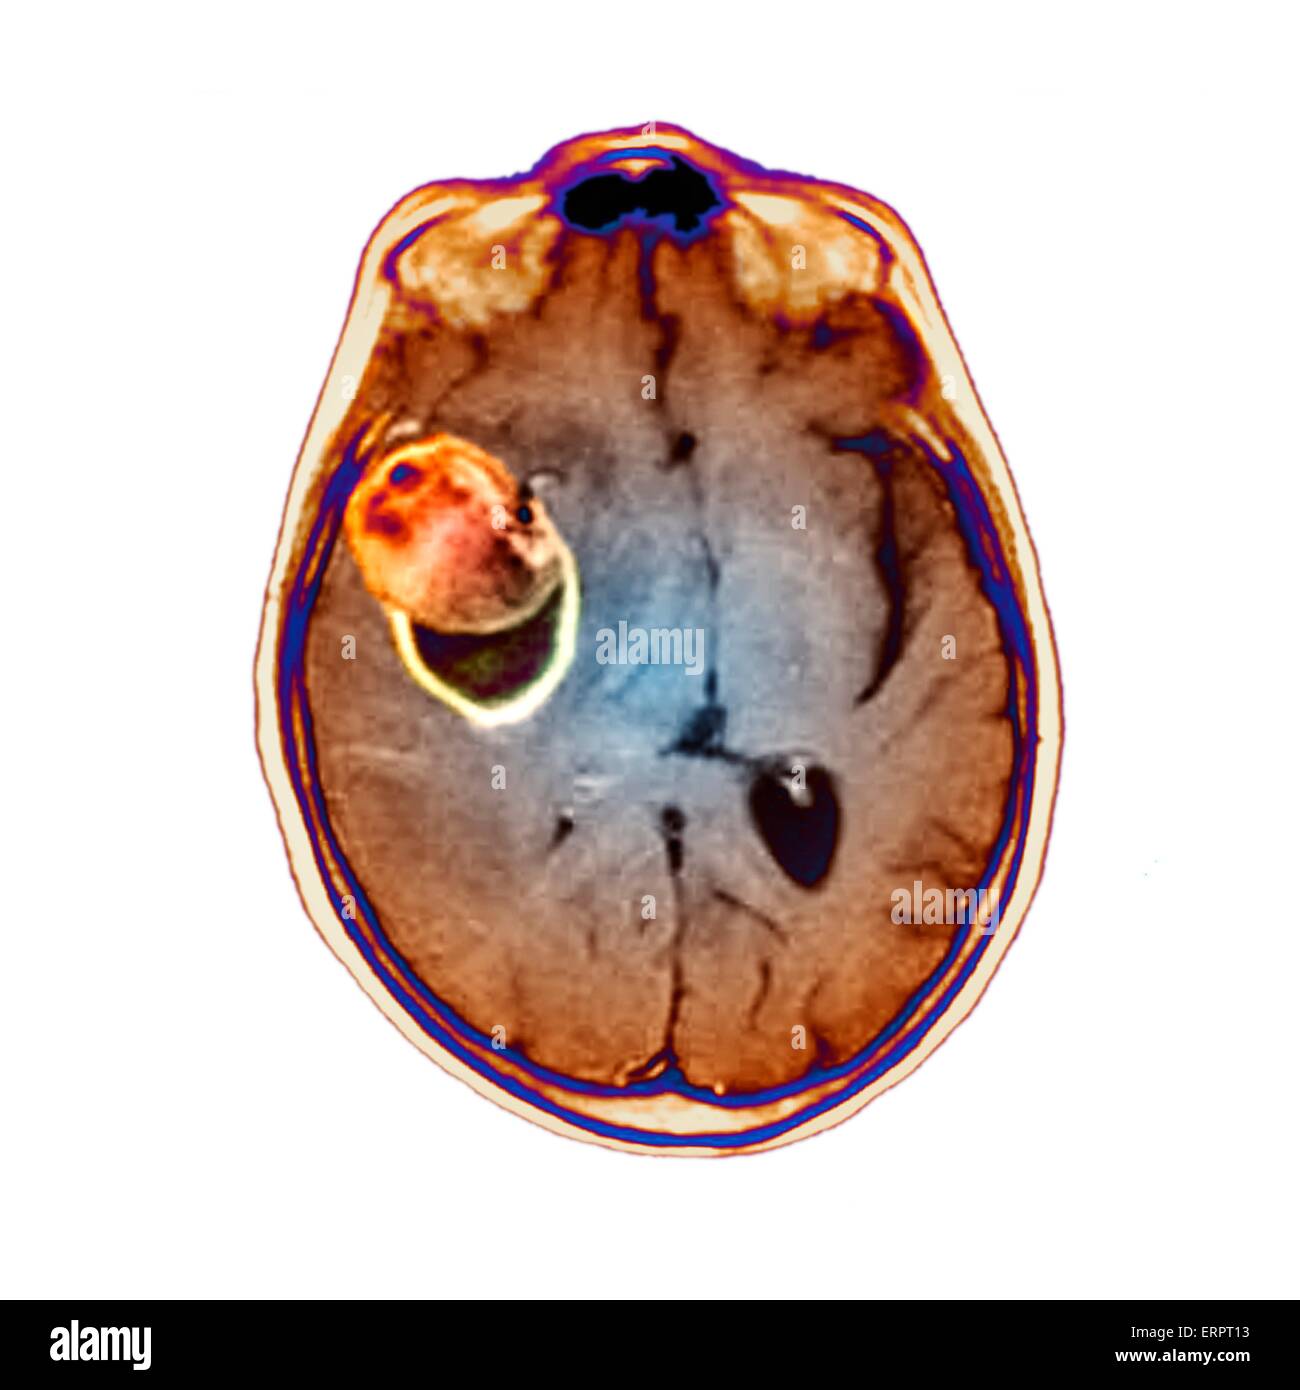 Colorato la tomografia computerizzata (CT) scansione del cervello di un 58 anno vecchio paziente che ha avuto un aneurisma (arancione) in arteria cerebrale media. Un aneurisma è un sangue-riempito la dilatazione in un vaso sanguigno. Essa è causata da un indebolimento della parete del vaso che m Foto Stock